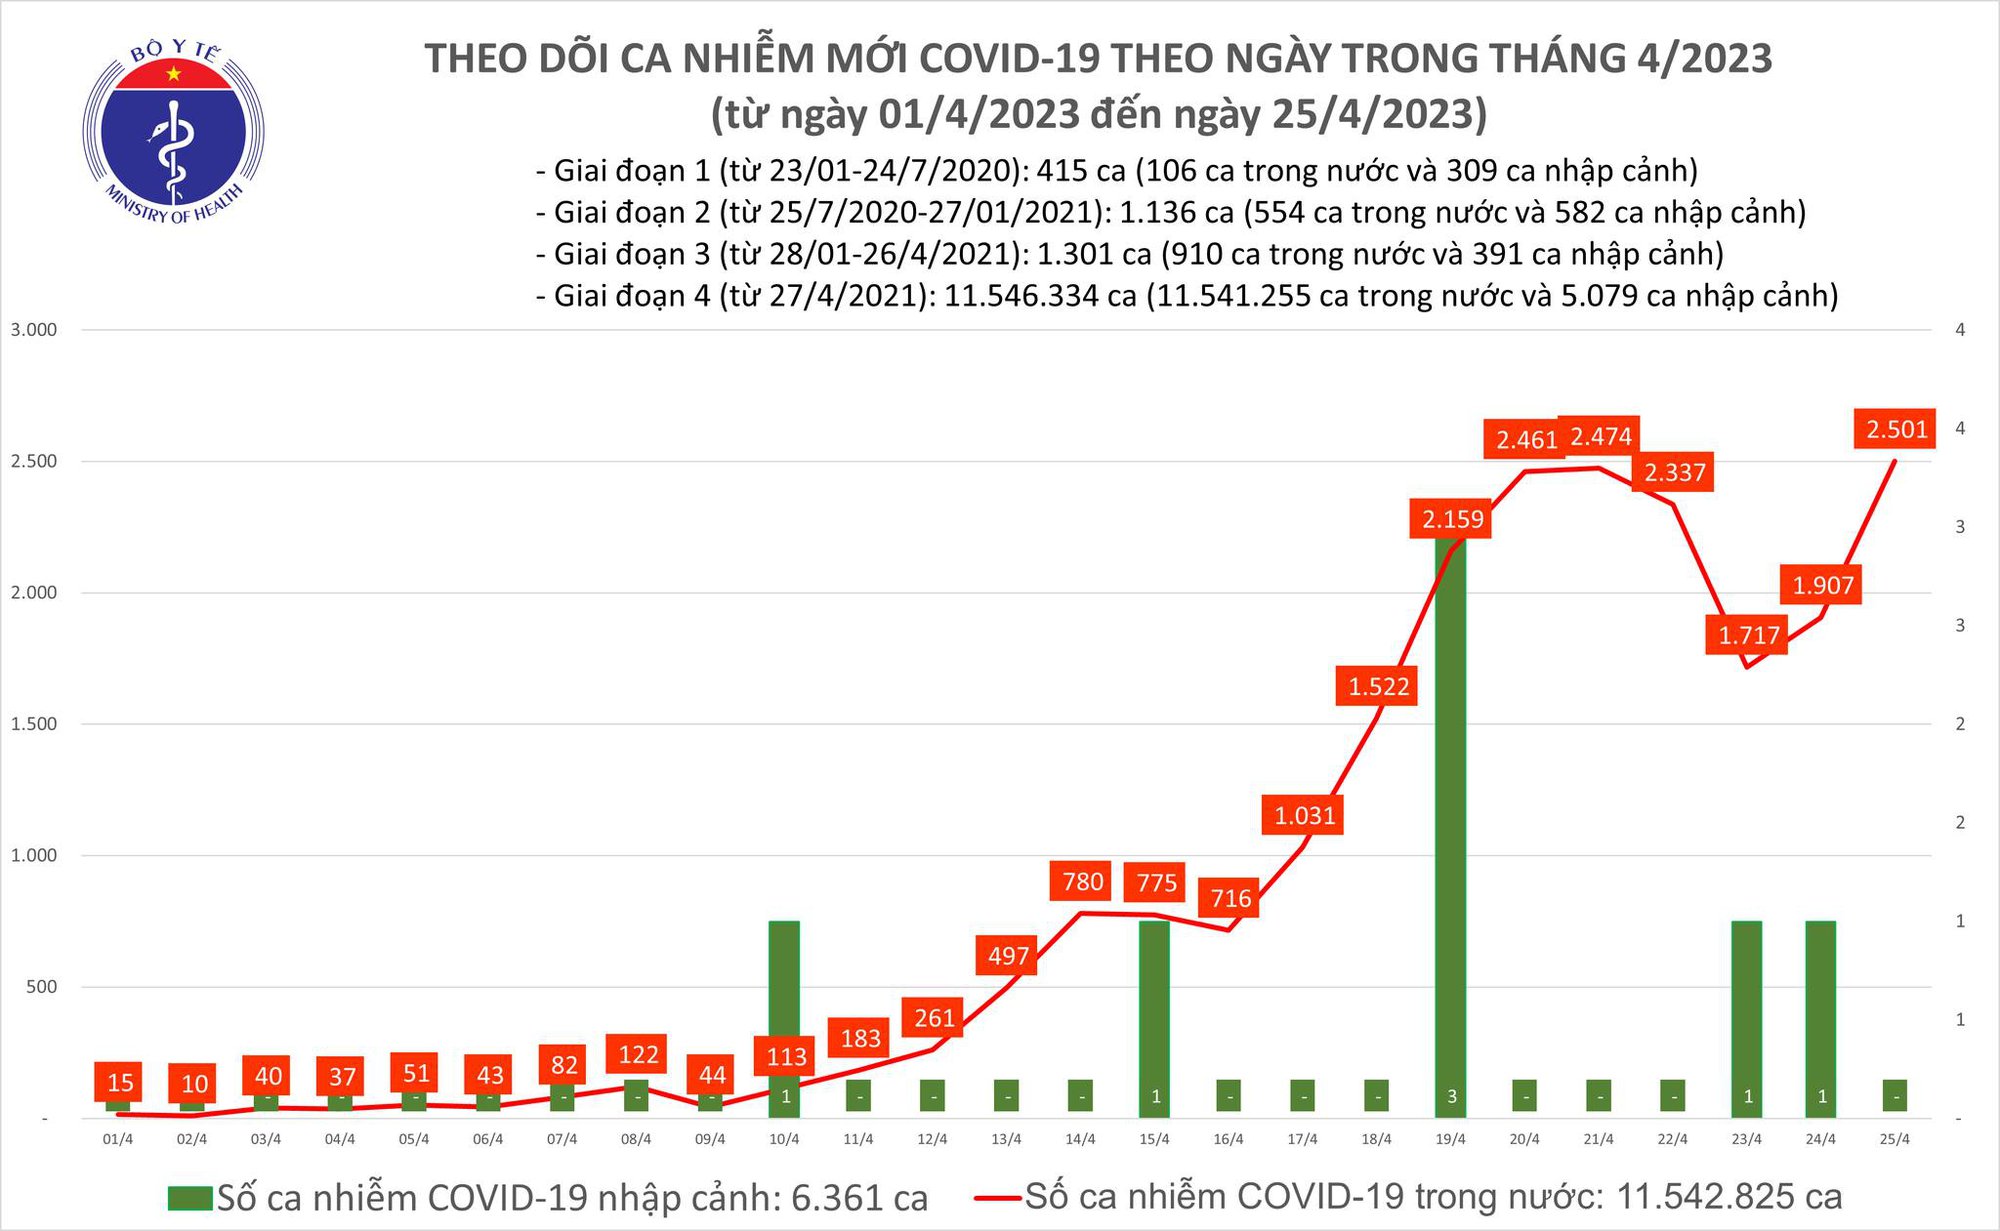 Ngày 25/4: Số mắc COVID-19 tăng lên 2.501 ca, 1 trường hợp tử vong - Ảnh 2.